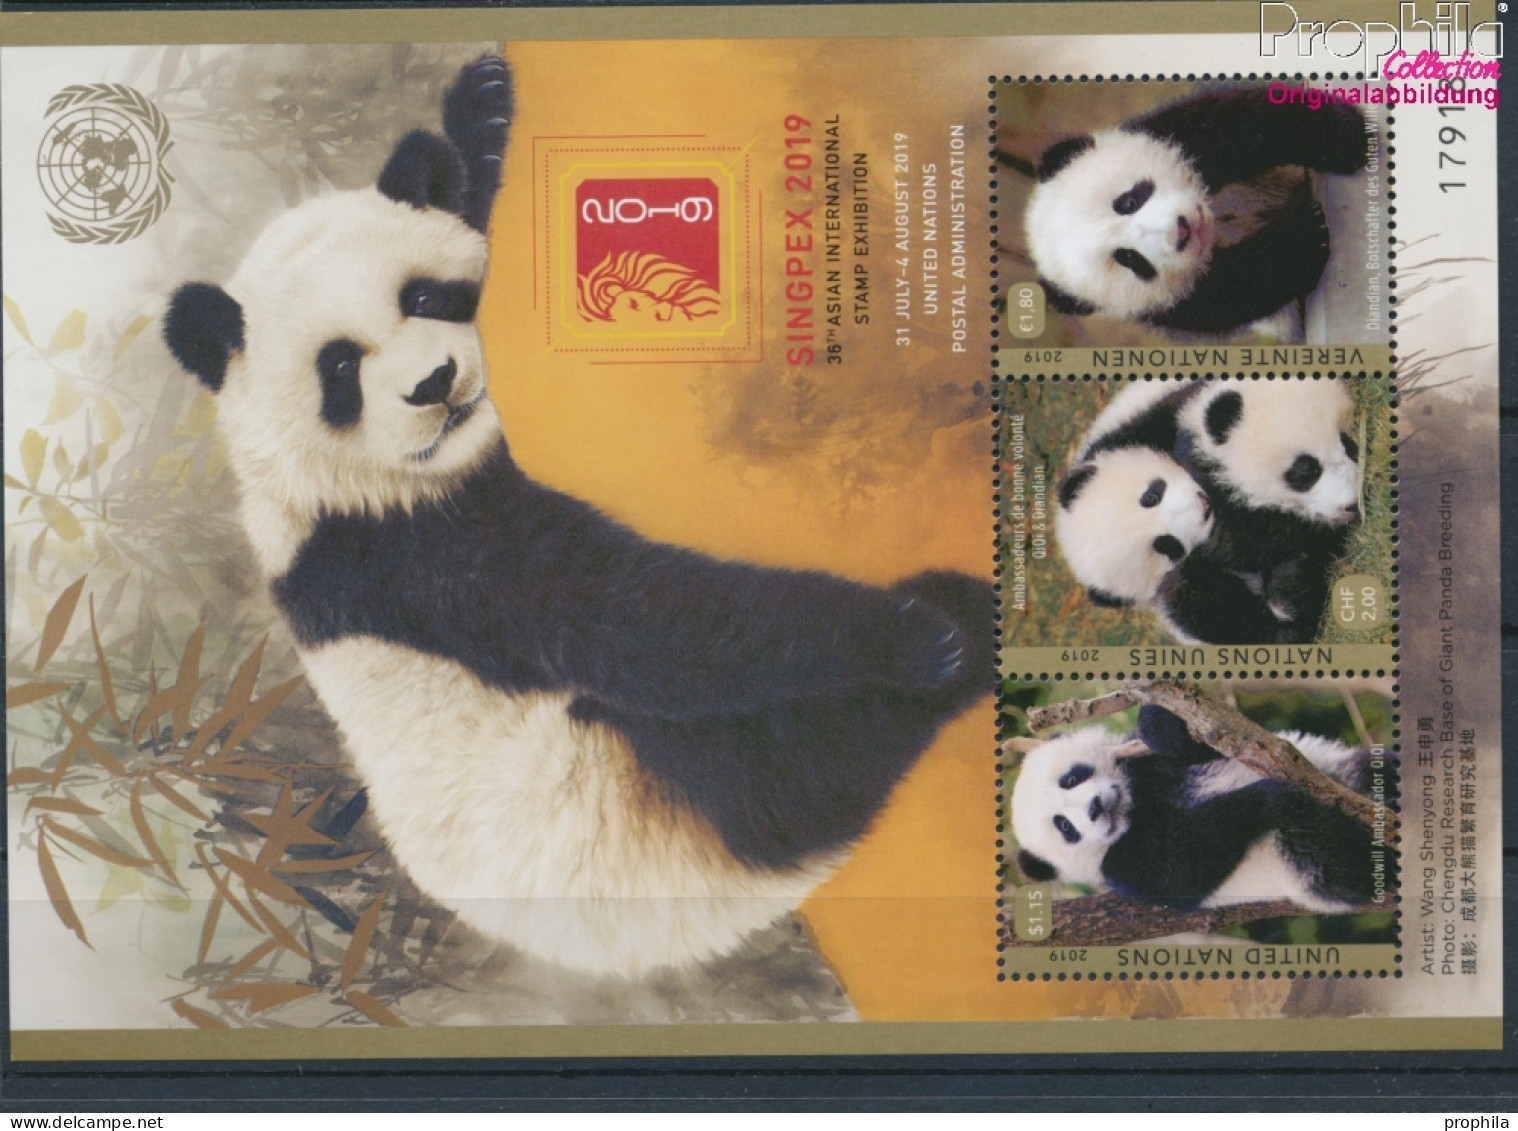 UNO - Genf Block56 (kompl.Ausg.) Postfrisch 2019 Pandabär (10194030 - Ungebraucht